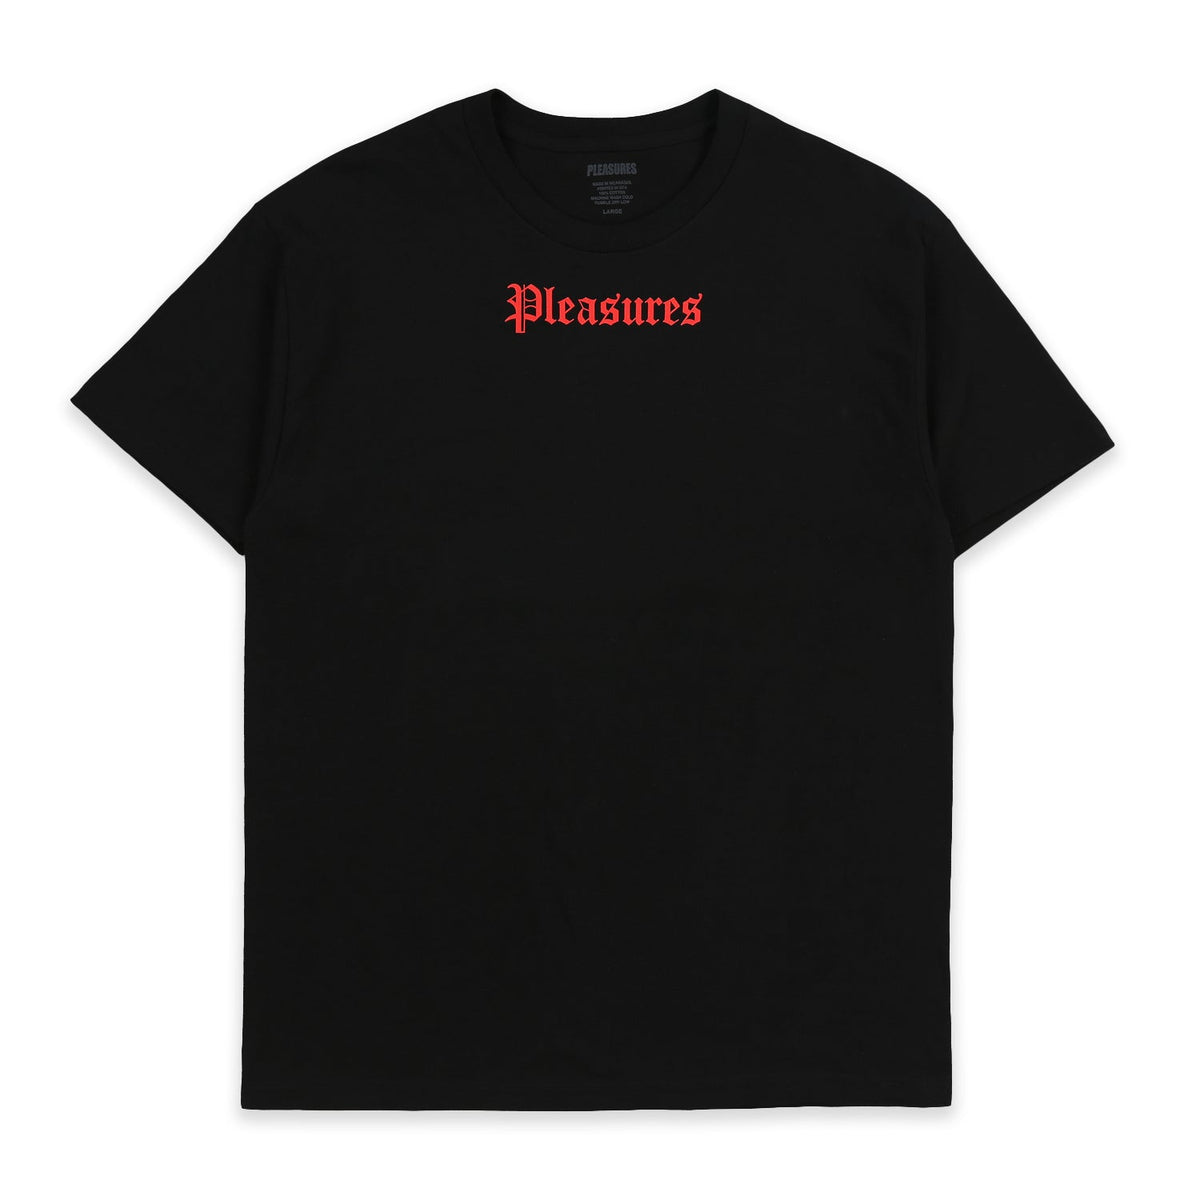 Pleasures Men Pub T-Shirt Black - T-SHIRTS - Canada